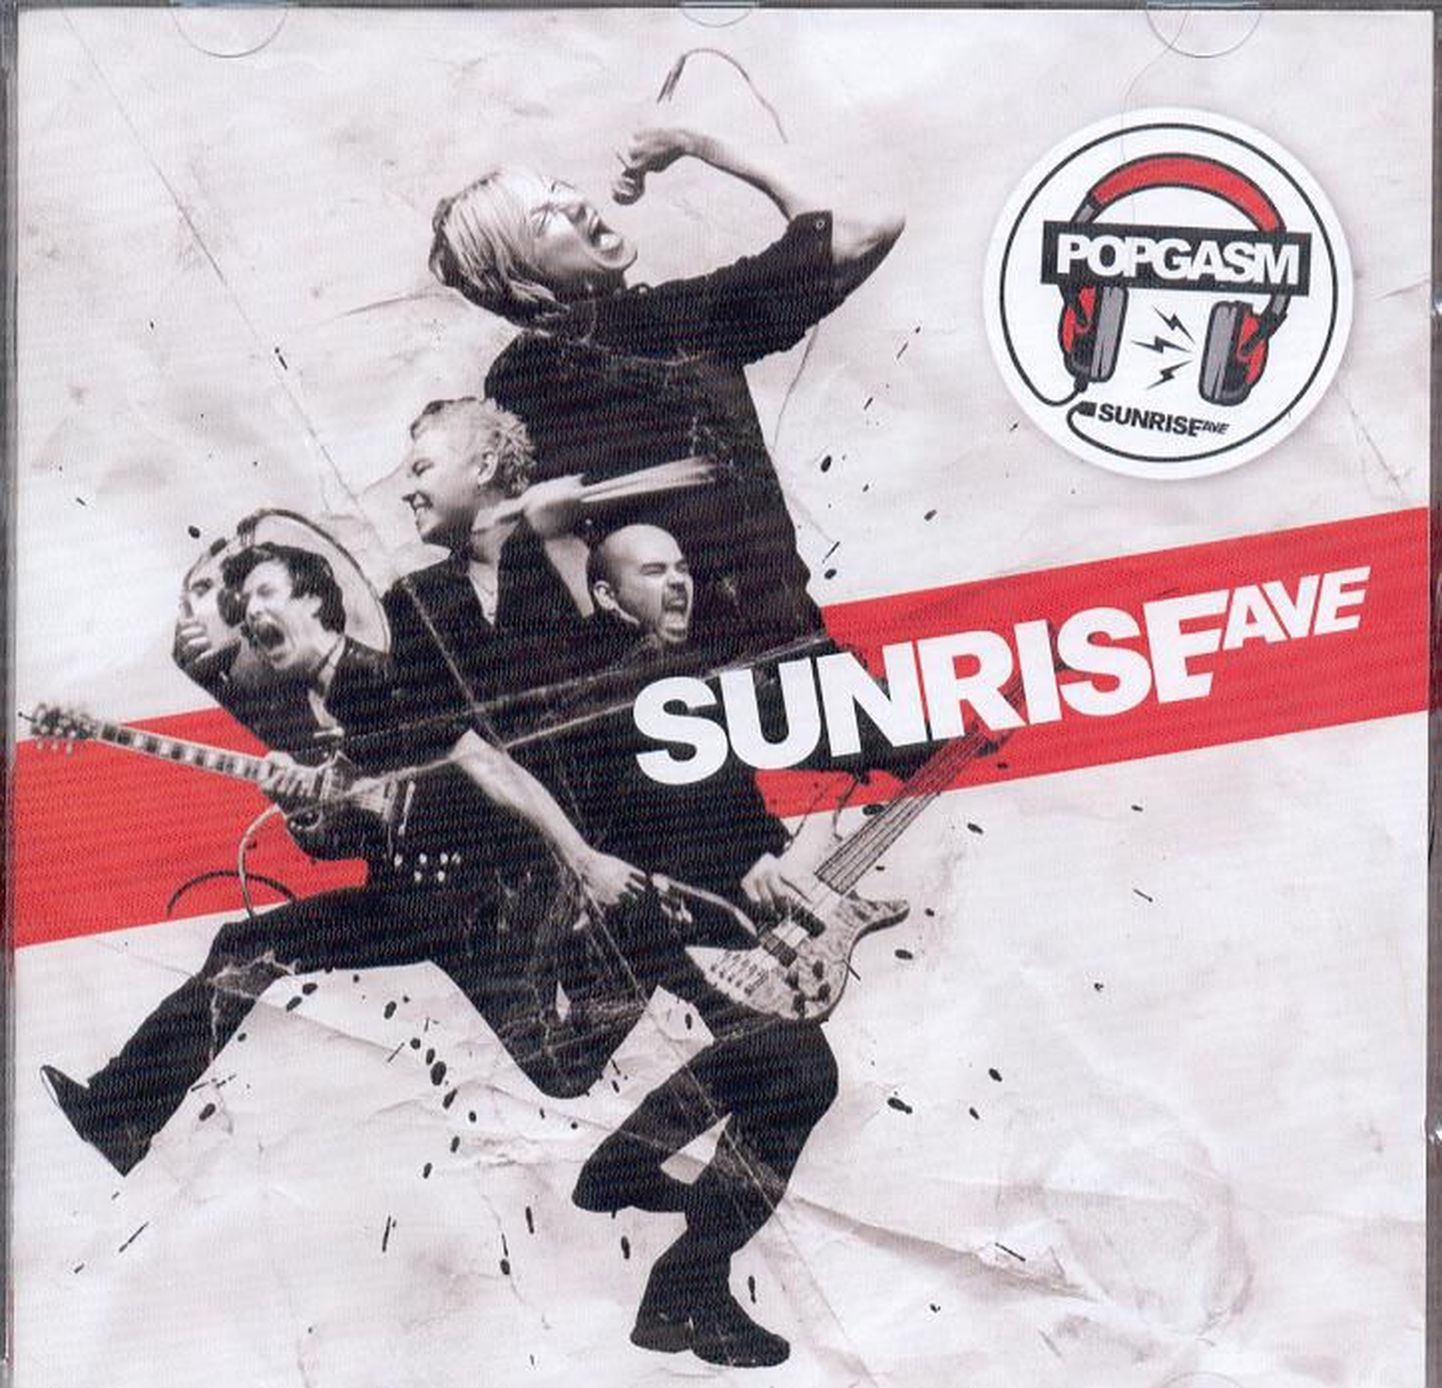 Sunrise Avenue “Popgasm”.